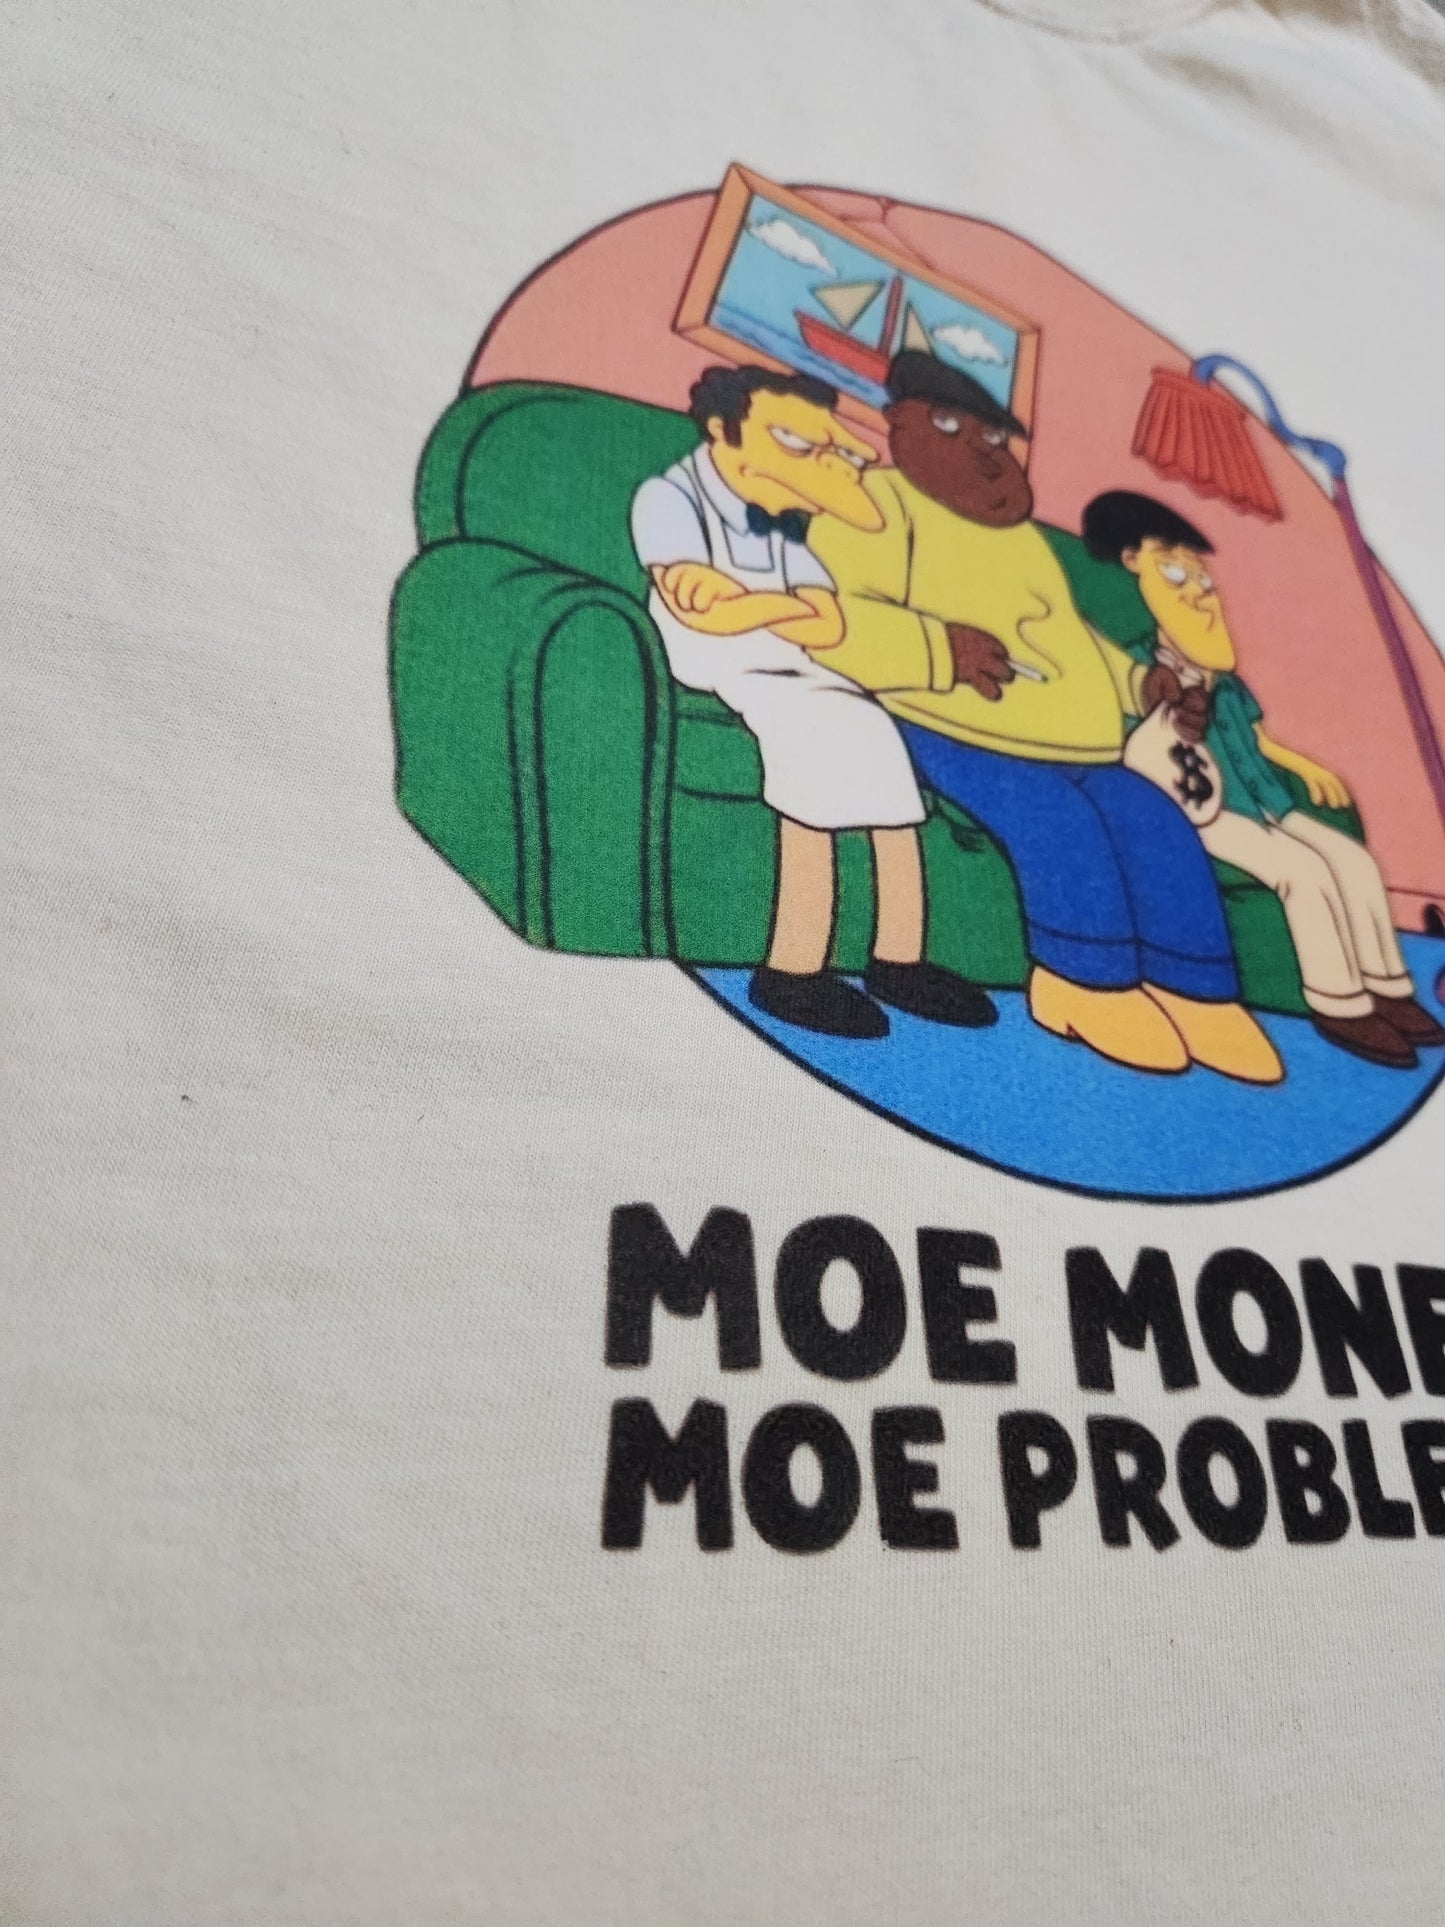 Moe' Money T-Shirt (OG)